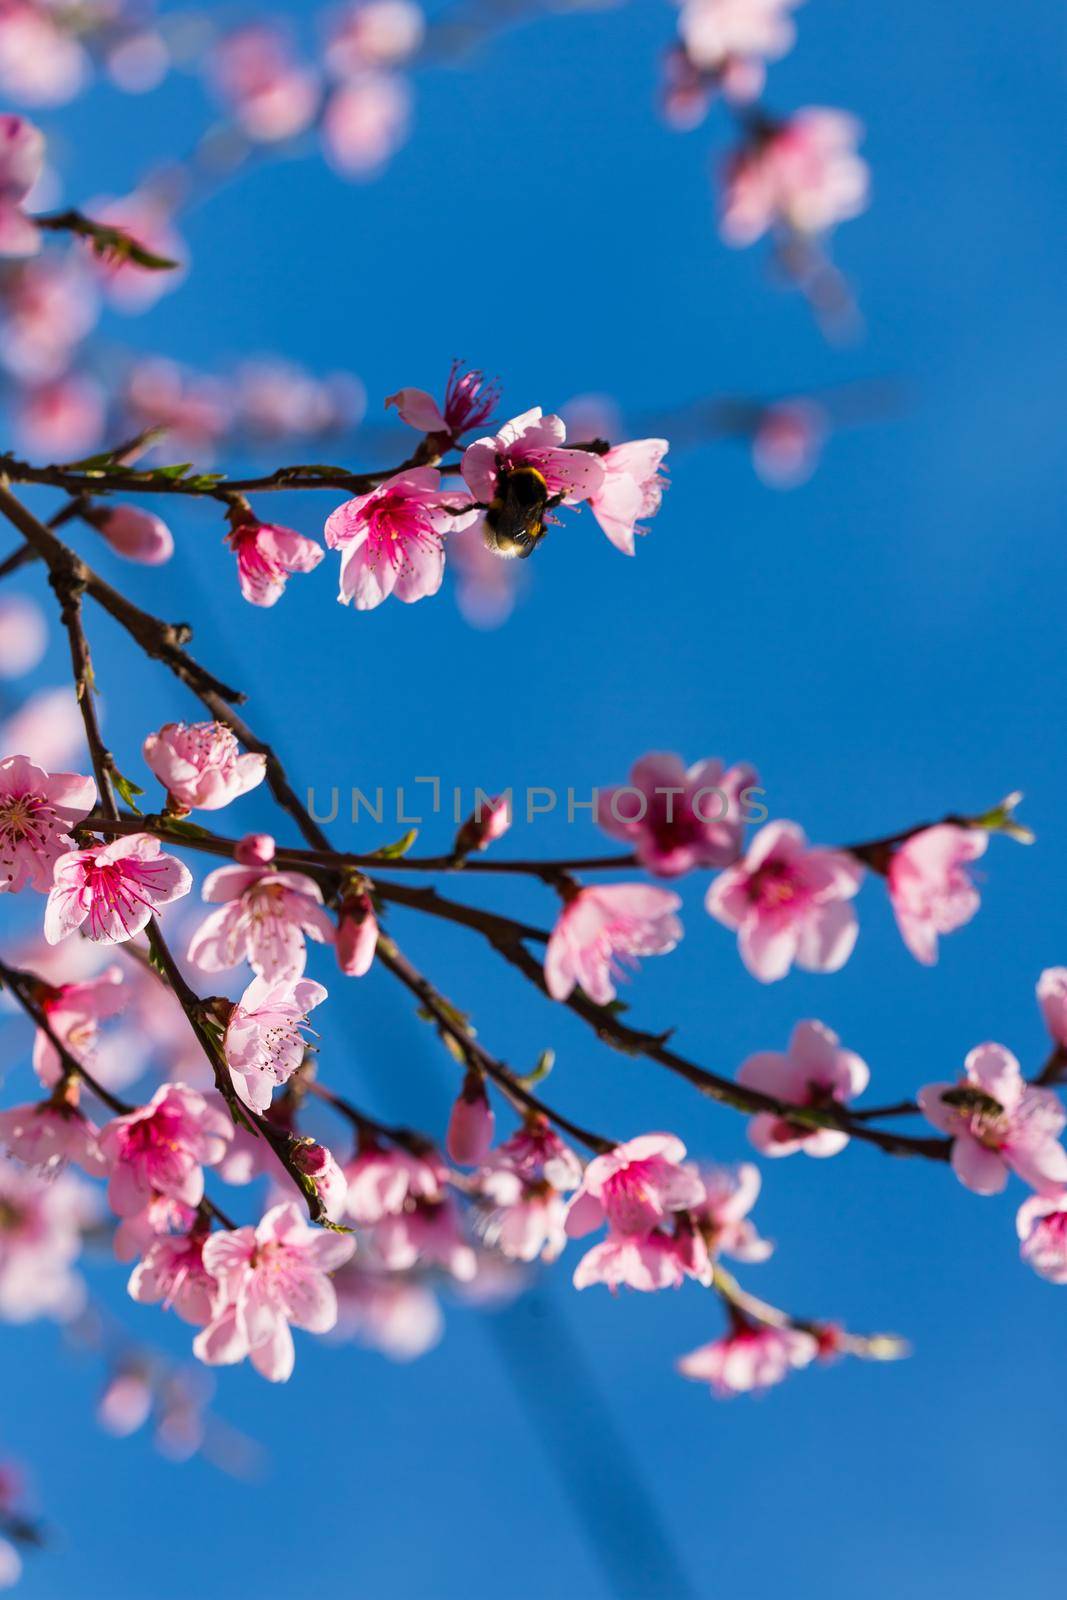 Colorful scene of tender sakura blossom against blue sky.